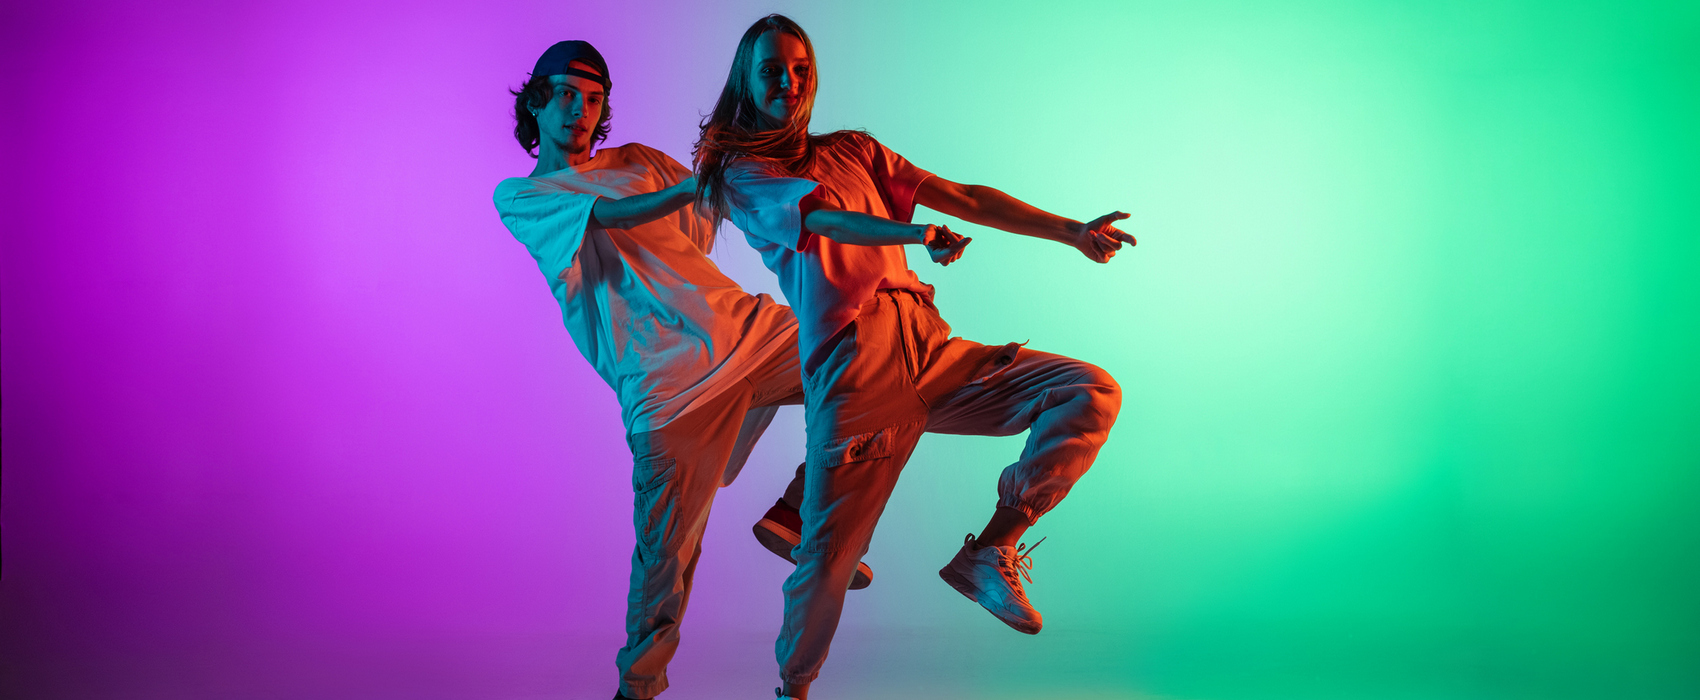 Soirée Hip-hop culture : danse, rap, djing…